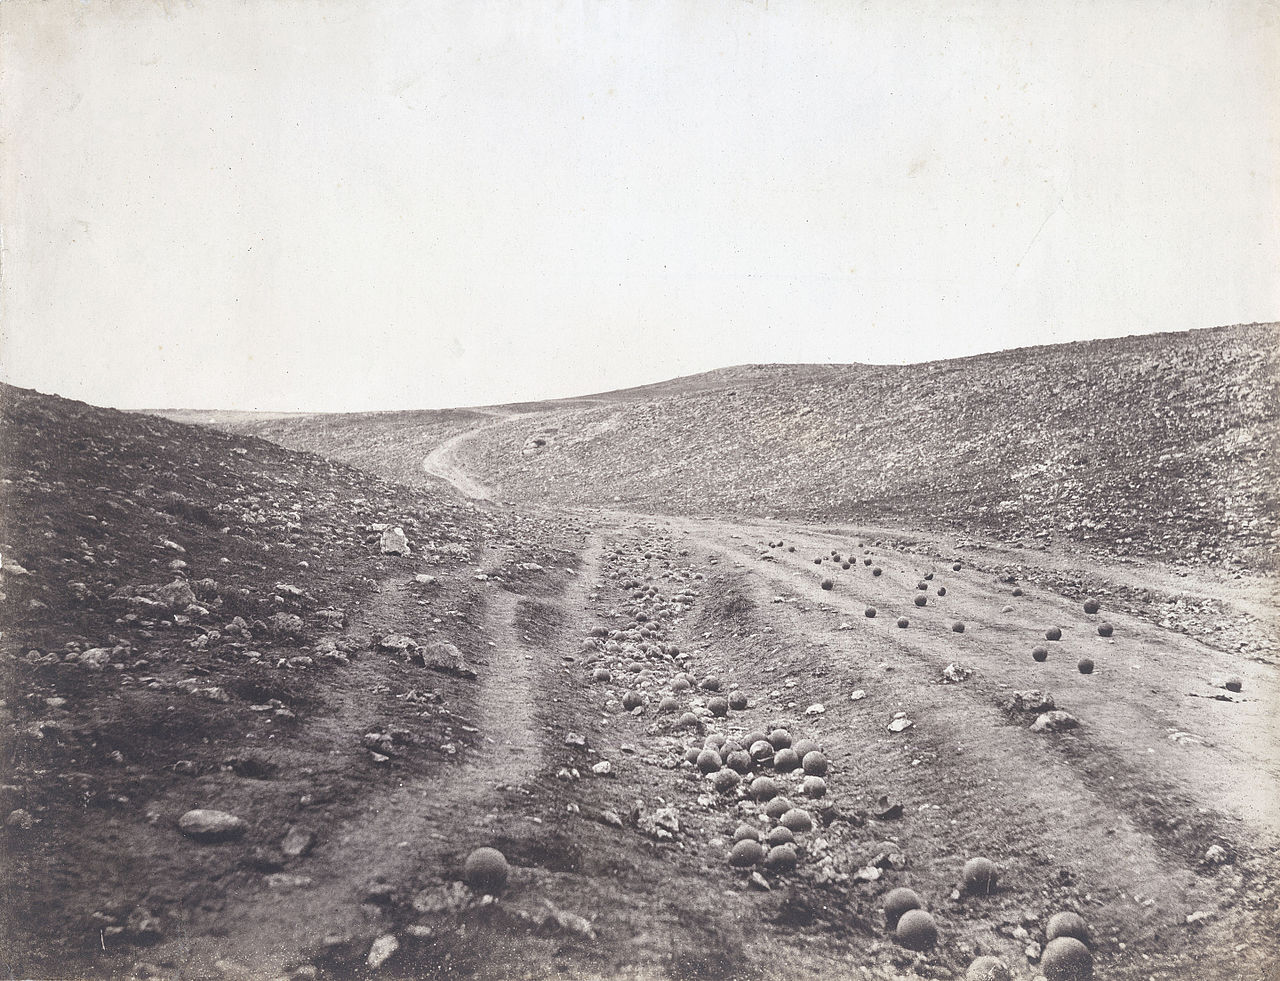 يعد المصور البريطاني روجر فنتون أول مصور حرب في العالم، واشتهر بصورة "وادي ظل الموت" (ويكيبيديا) 